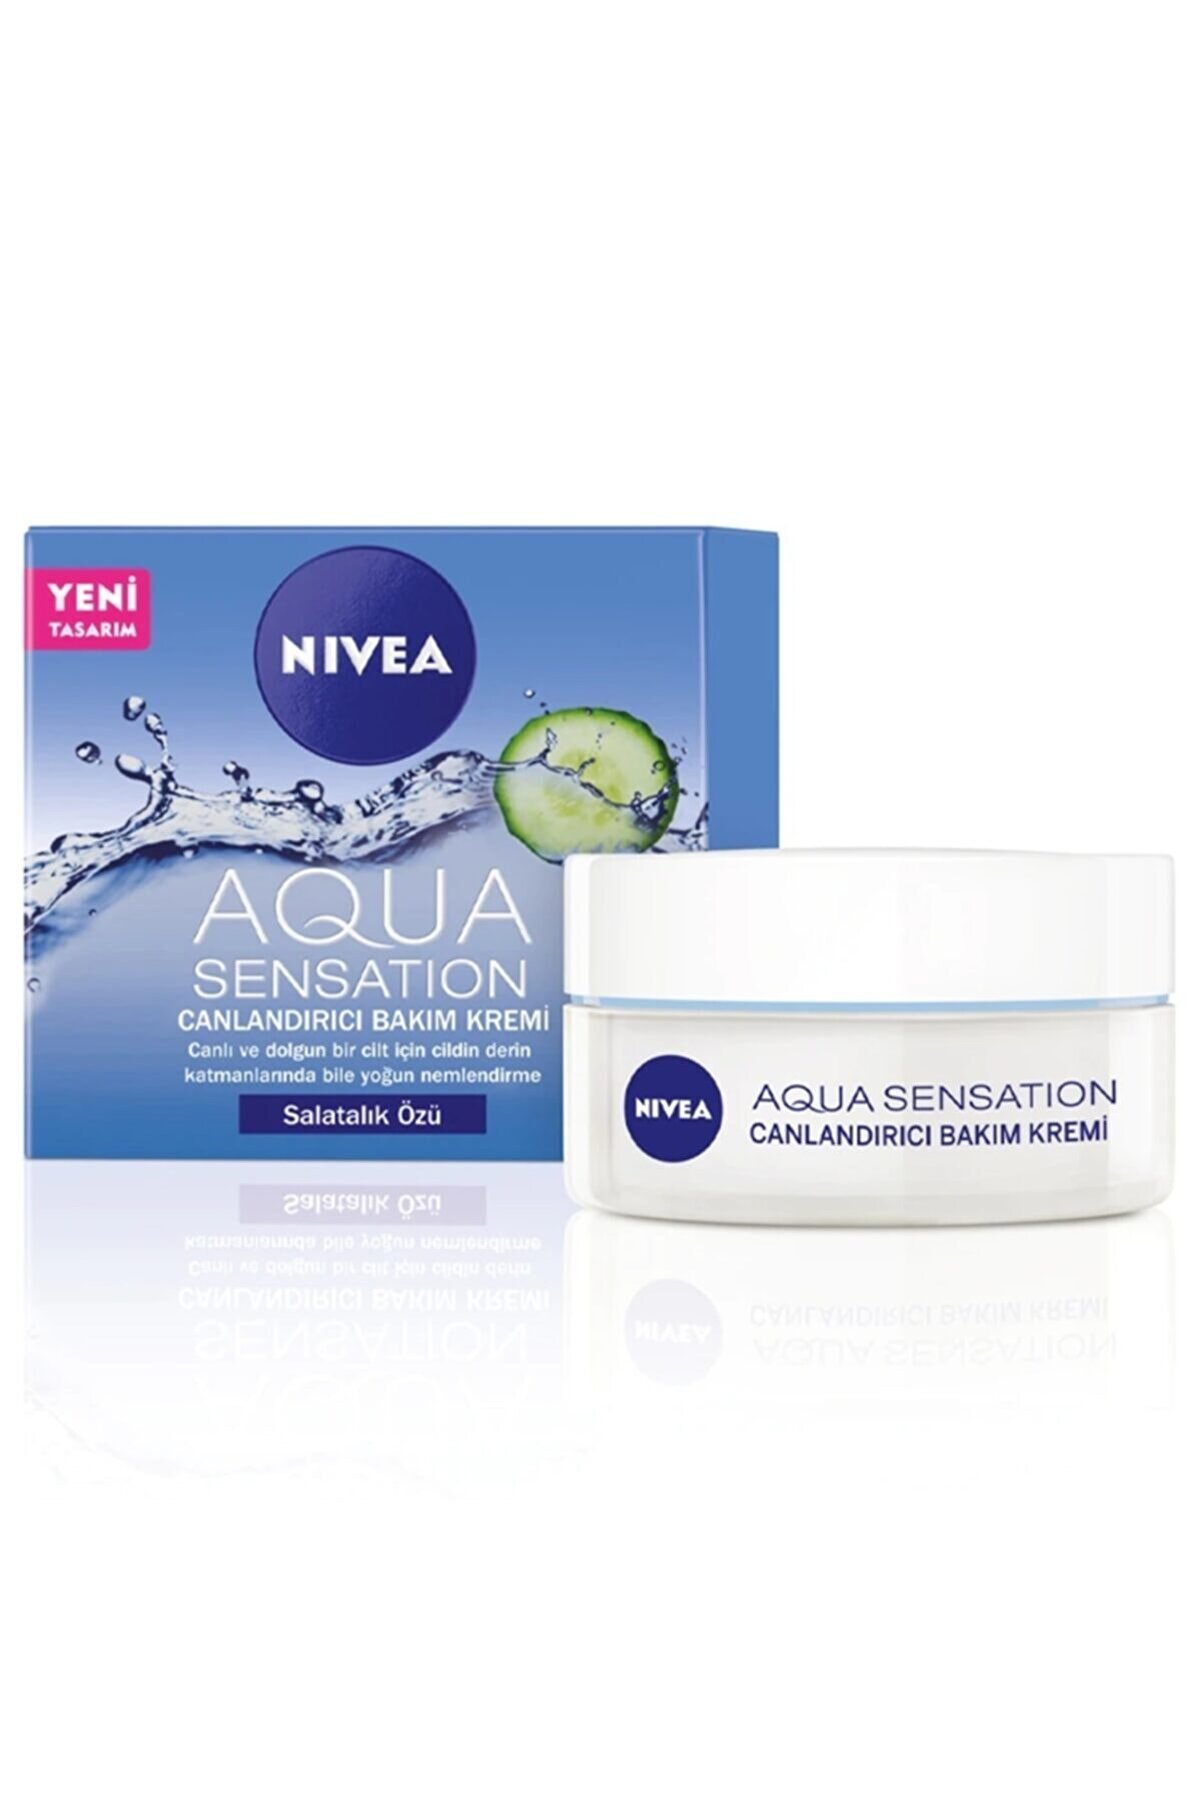 NIVEA Aqua Sensation Canlandırıcı Bakım Kremi 50 ml